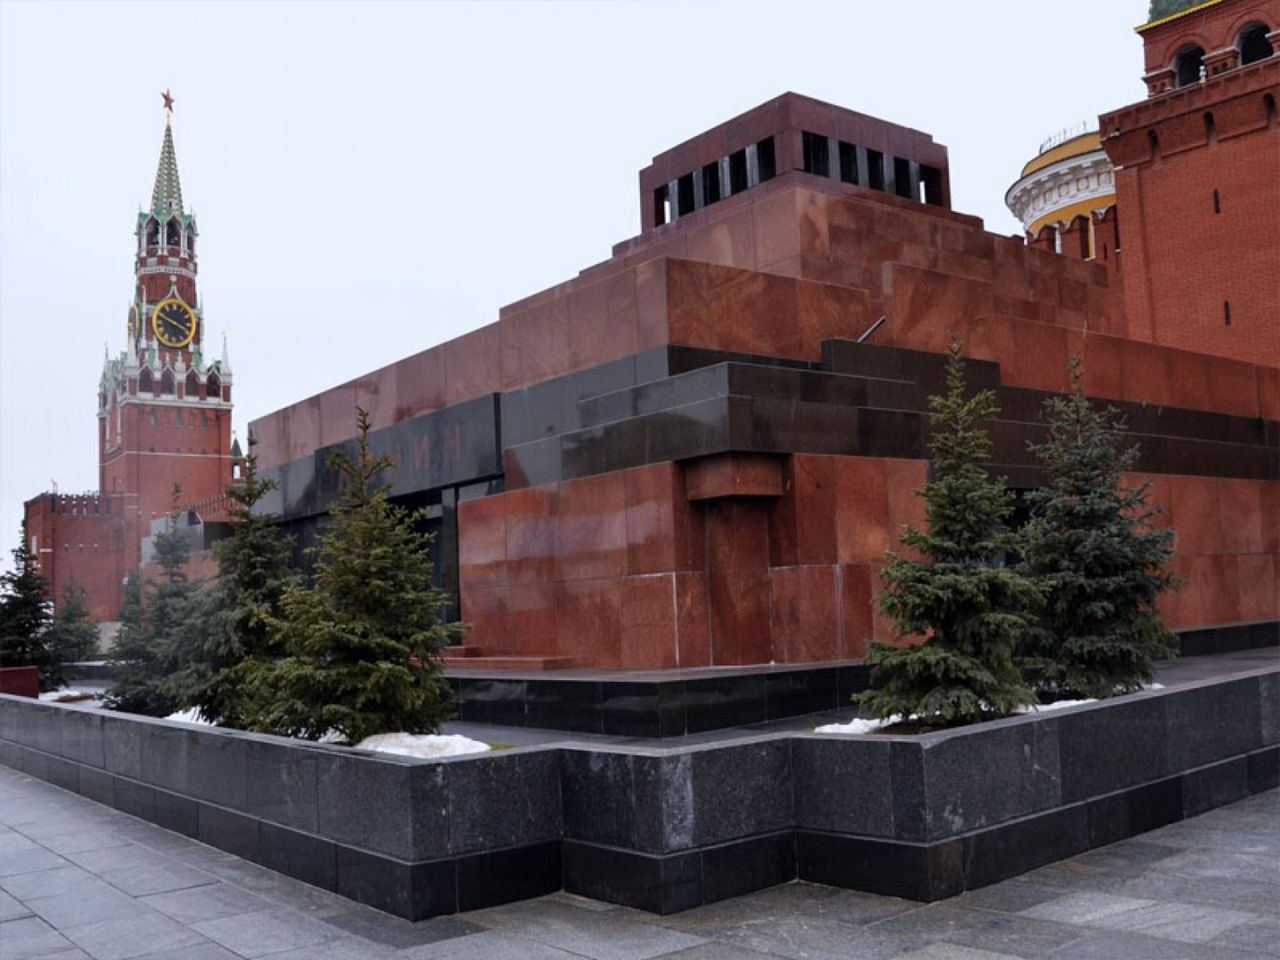 Мавзолей: загадки кремлевского некрополя | Цена 4500₽, отзывы, описание экскурсии